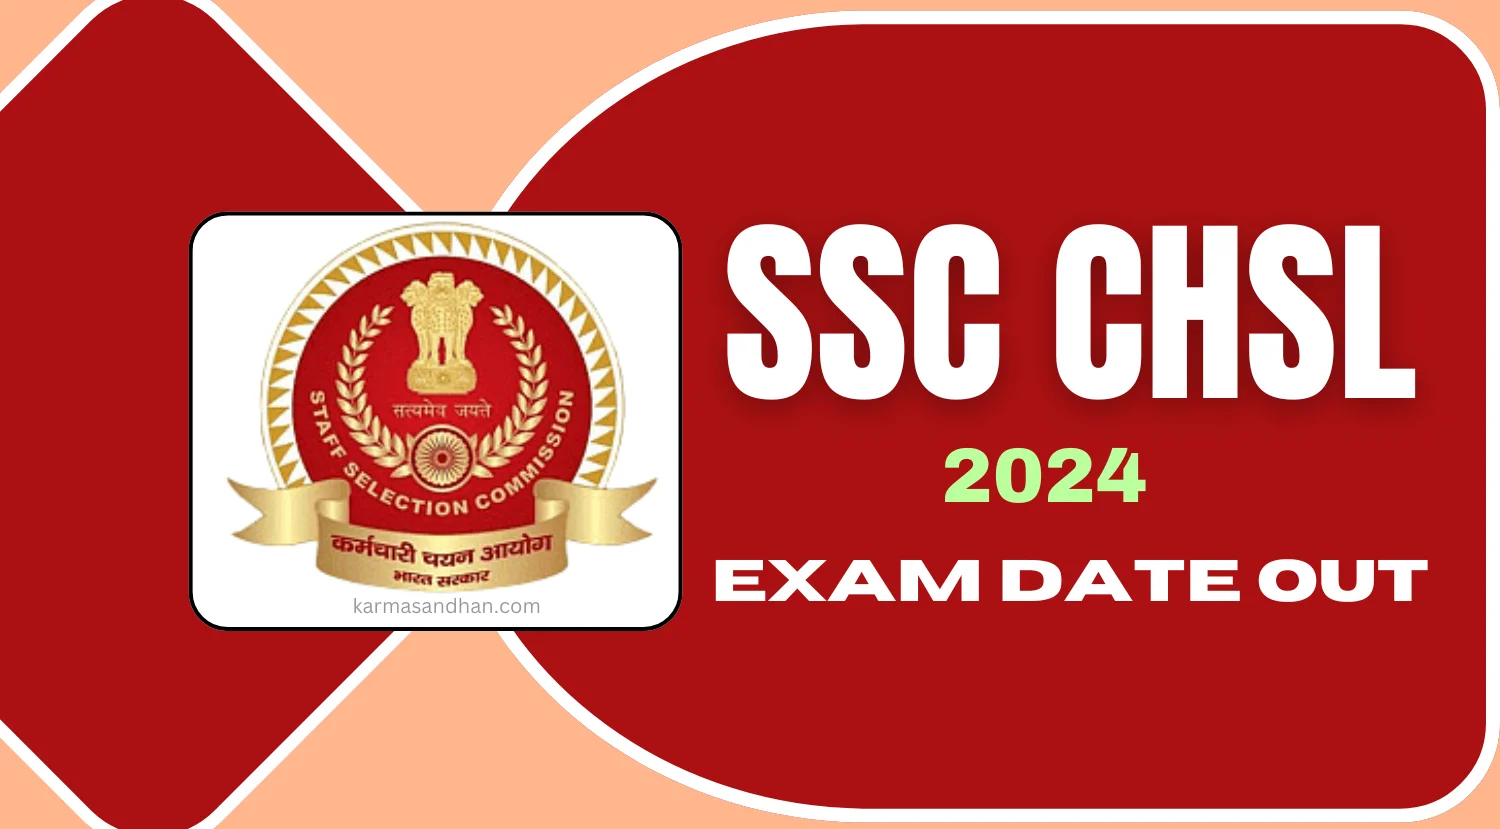 SSC CHSL 2024 Exam Date Out